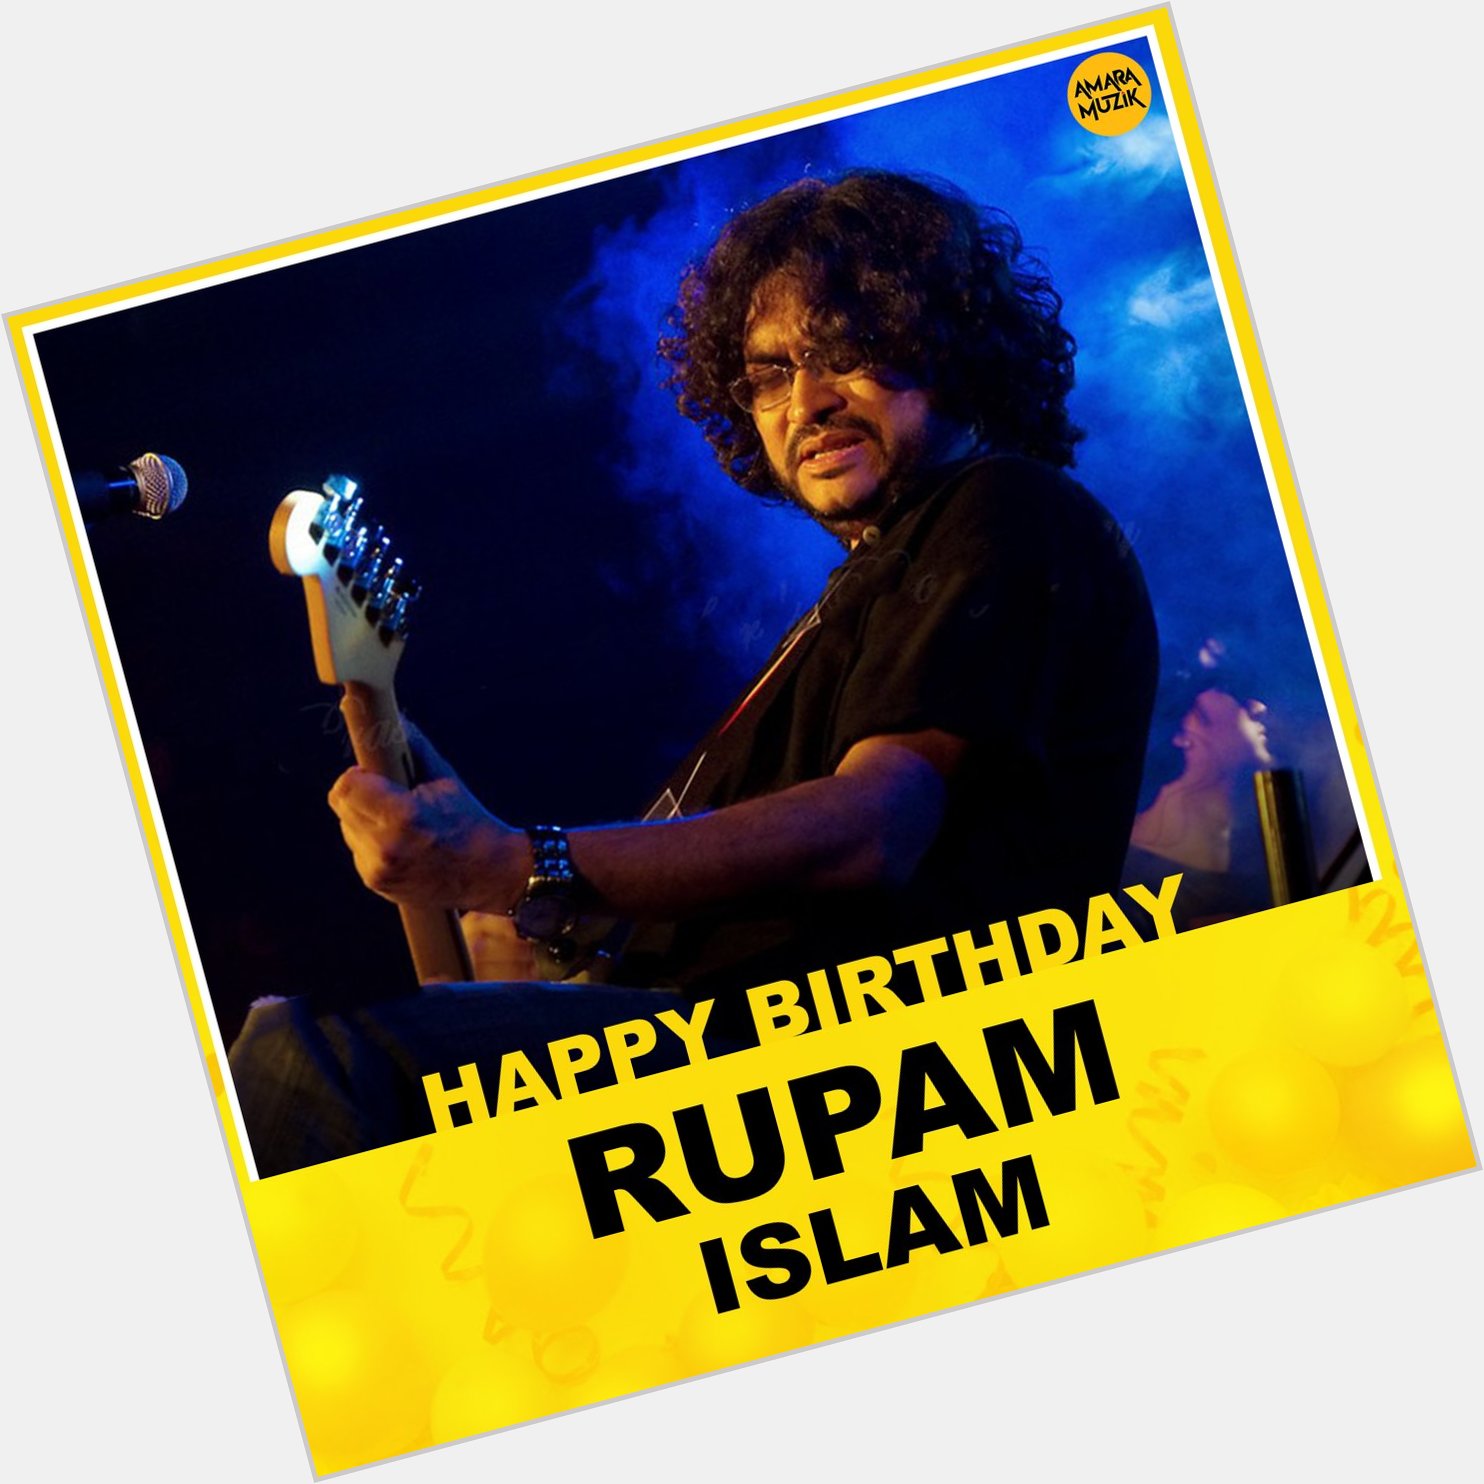 Team Amara Muzik Bengali wishes Singer Rupam Islam  a very Happy Birthday!!! 